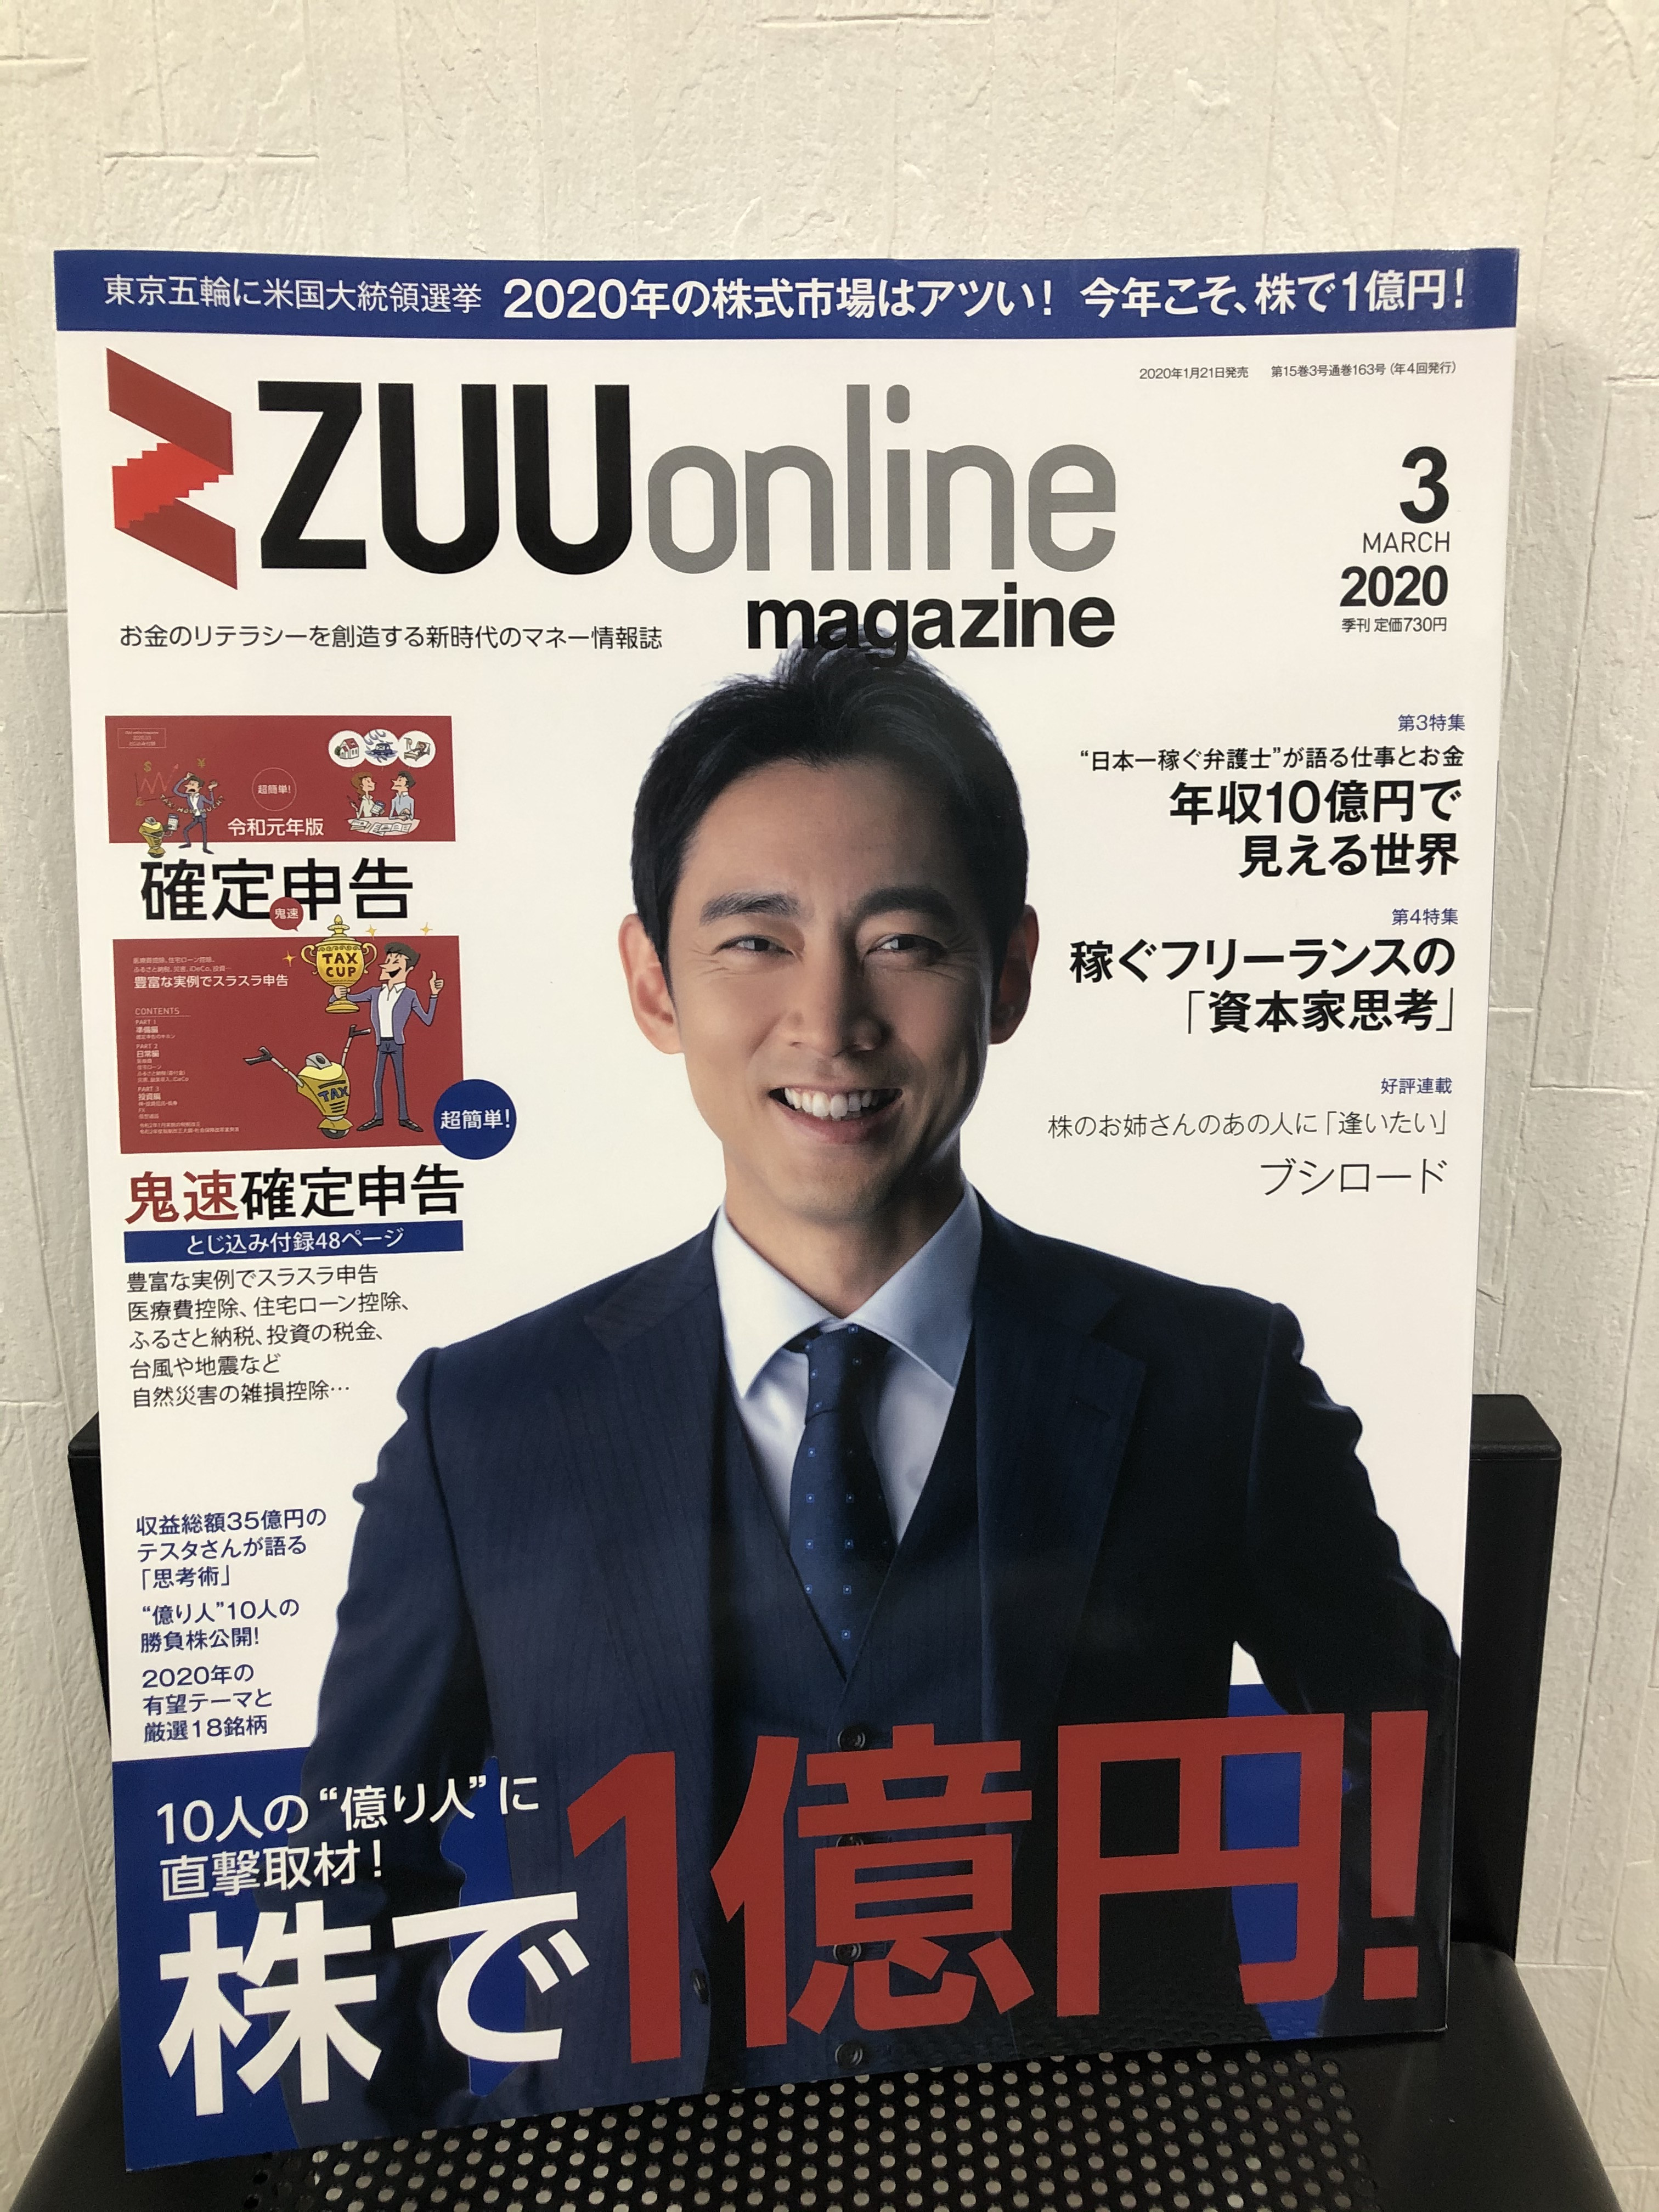 『ZUU online magazine』2020年3月号への寄稿のお知らせ